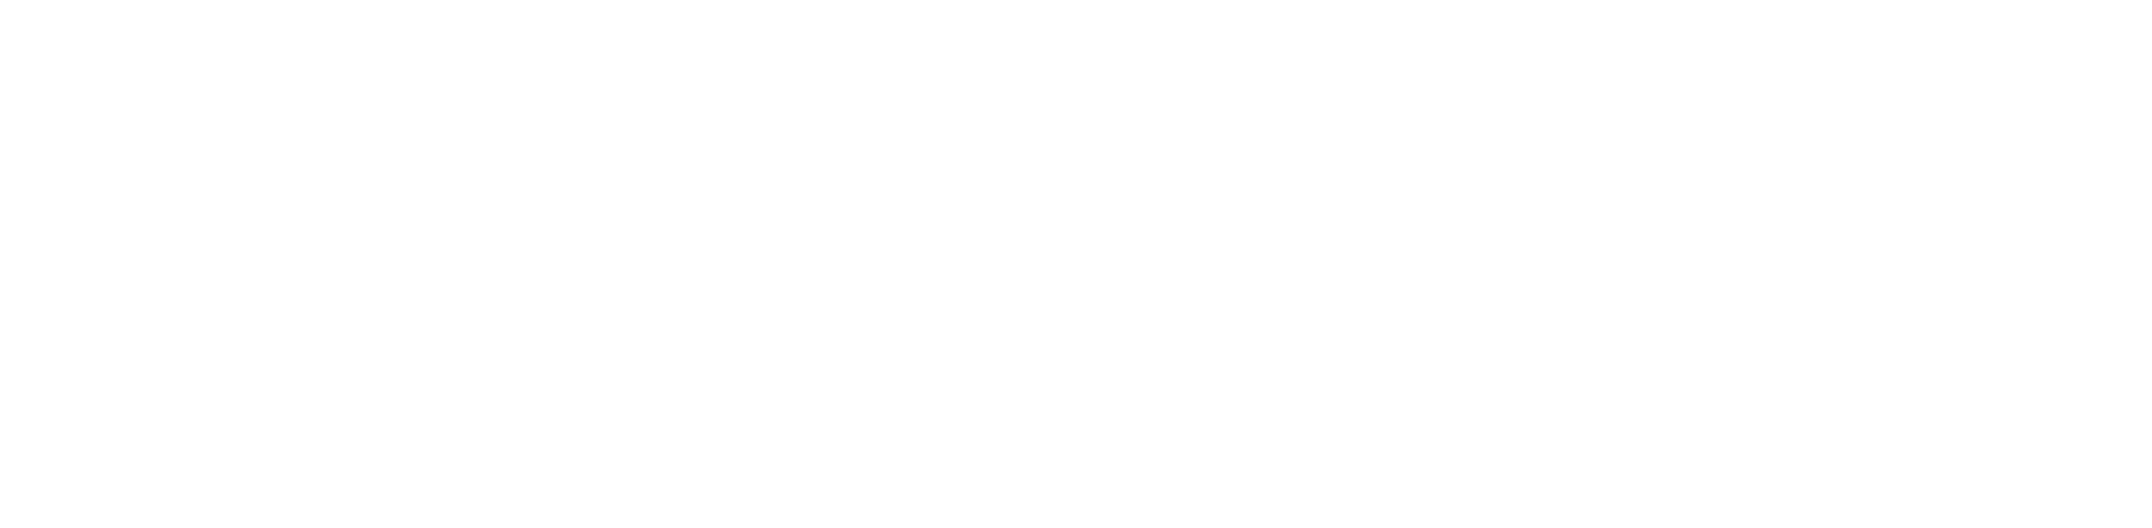 texterify logo